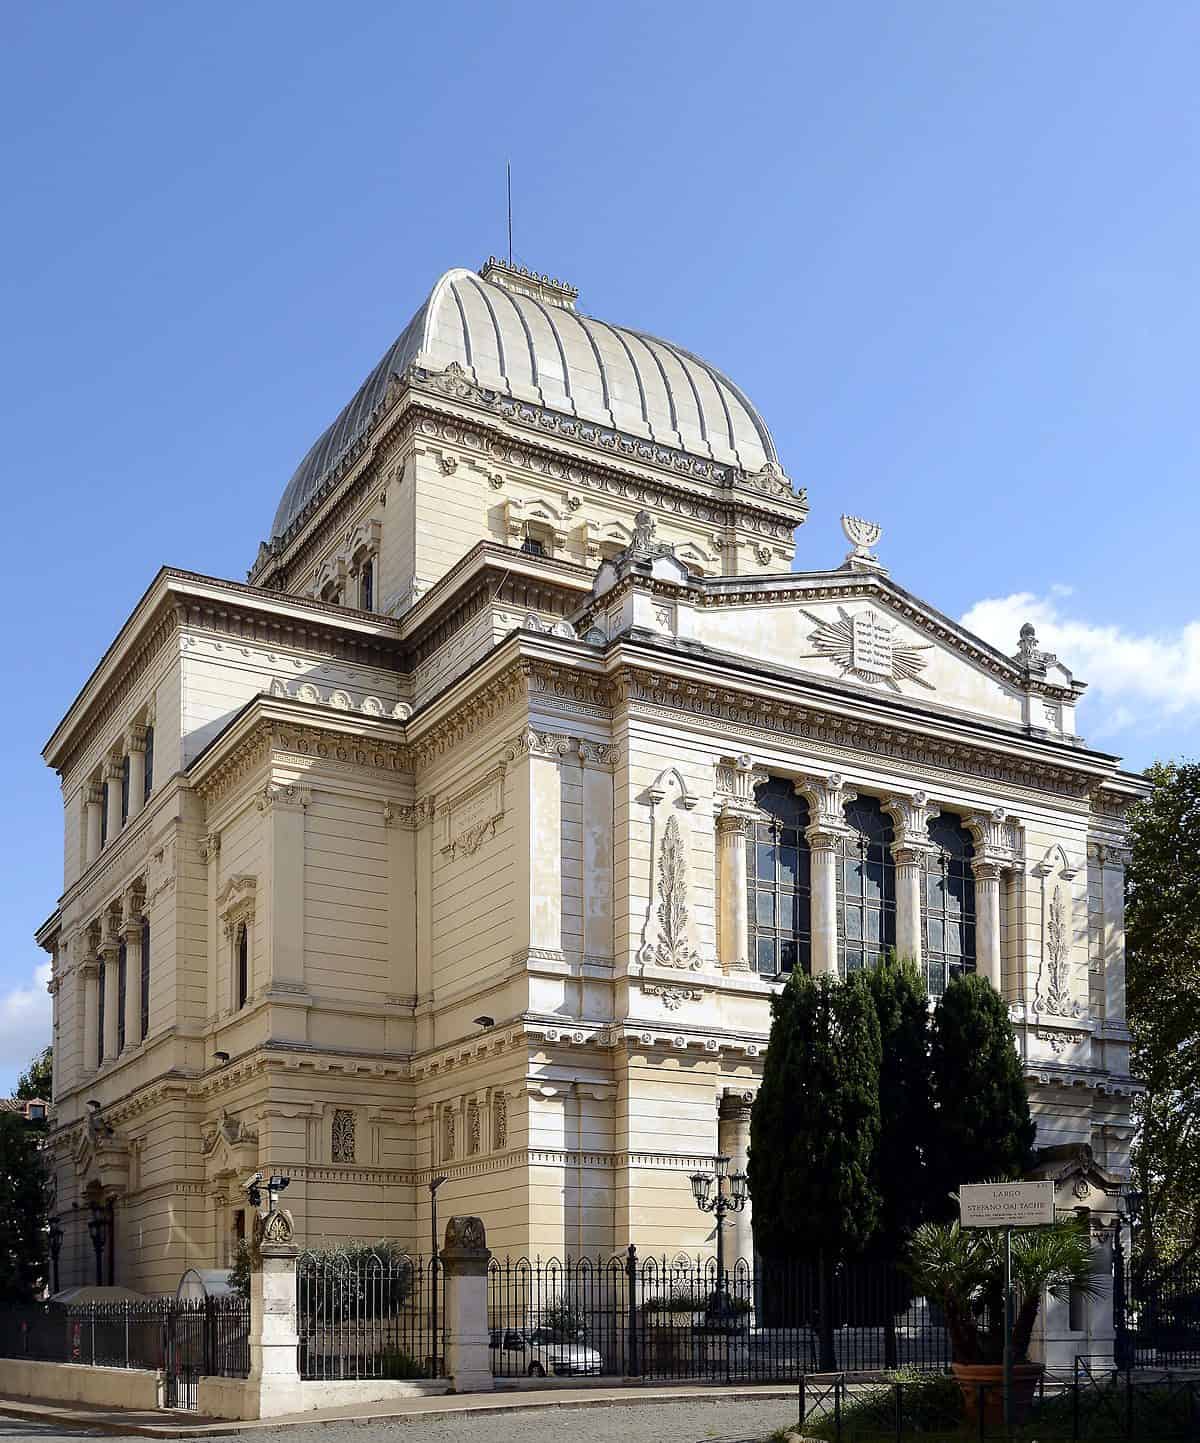 Sinagoga di Roma (Tempio Maggiore)